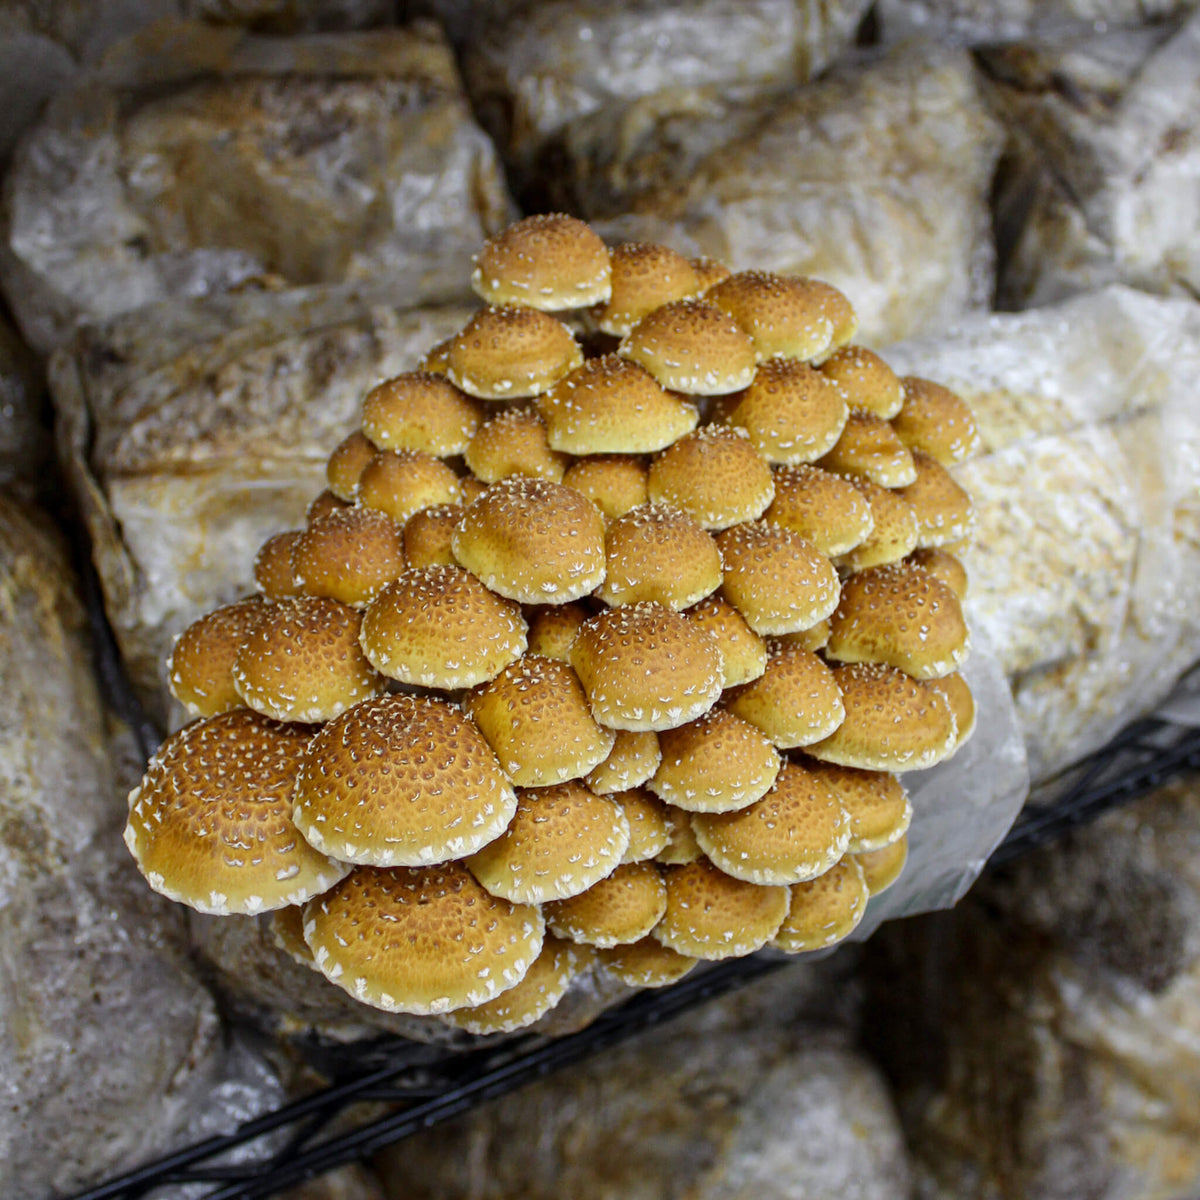 Champignons hydne corail « Mycélium – Les 400 Pieds de Champignon